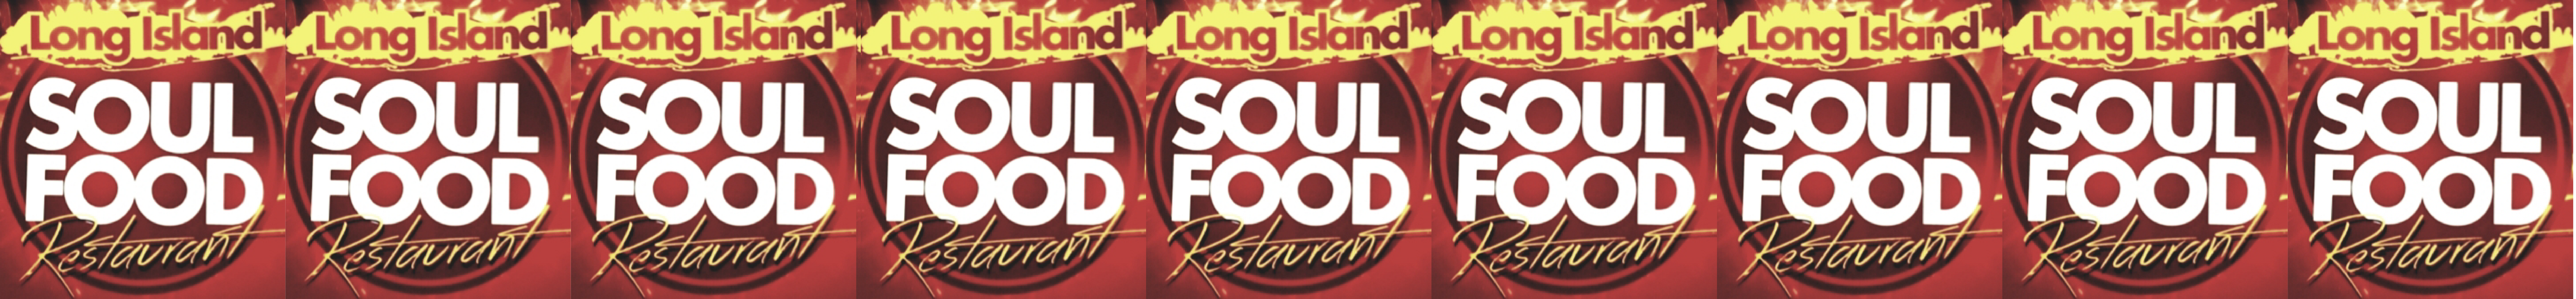 long island soul food